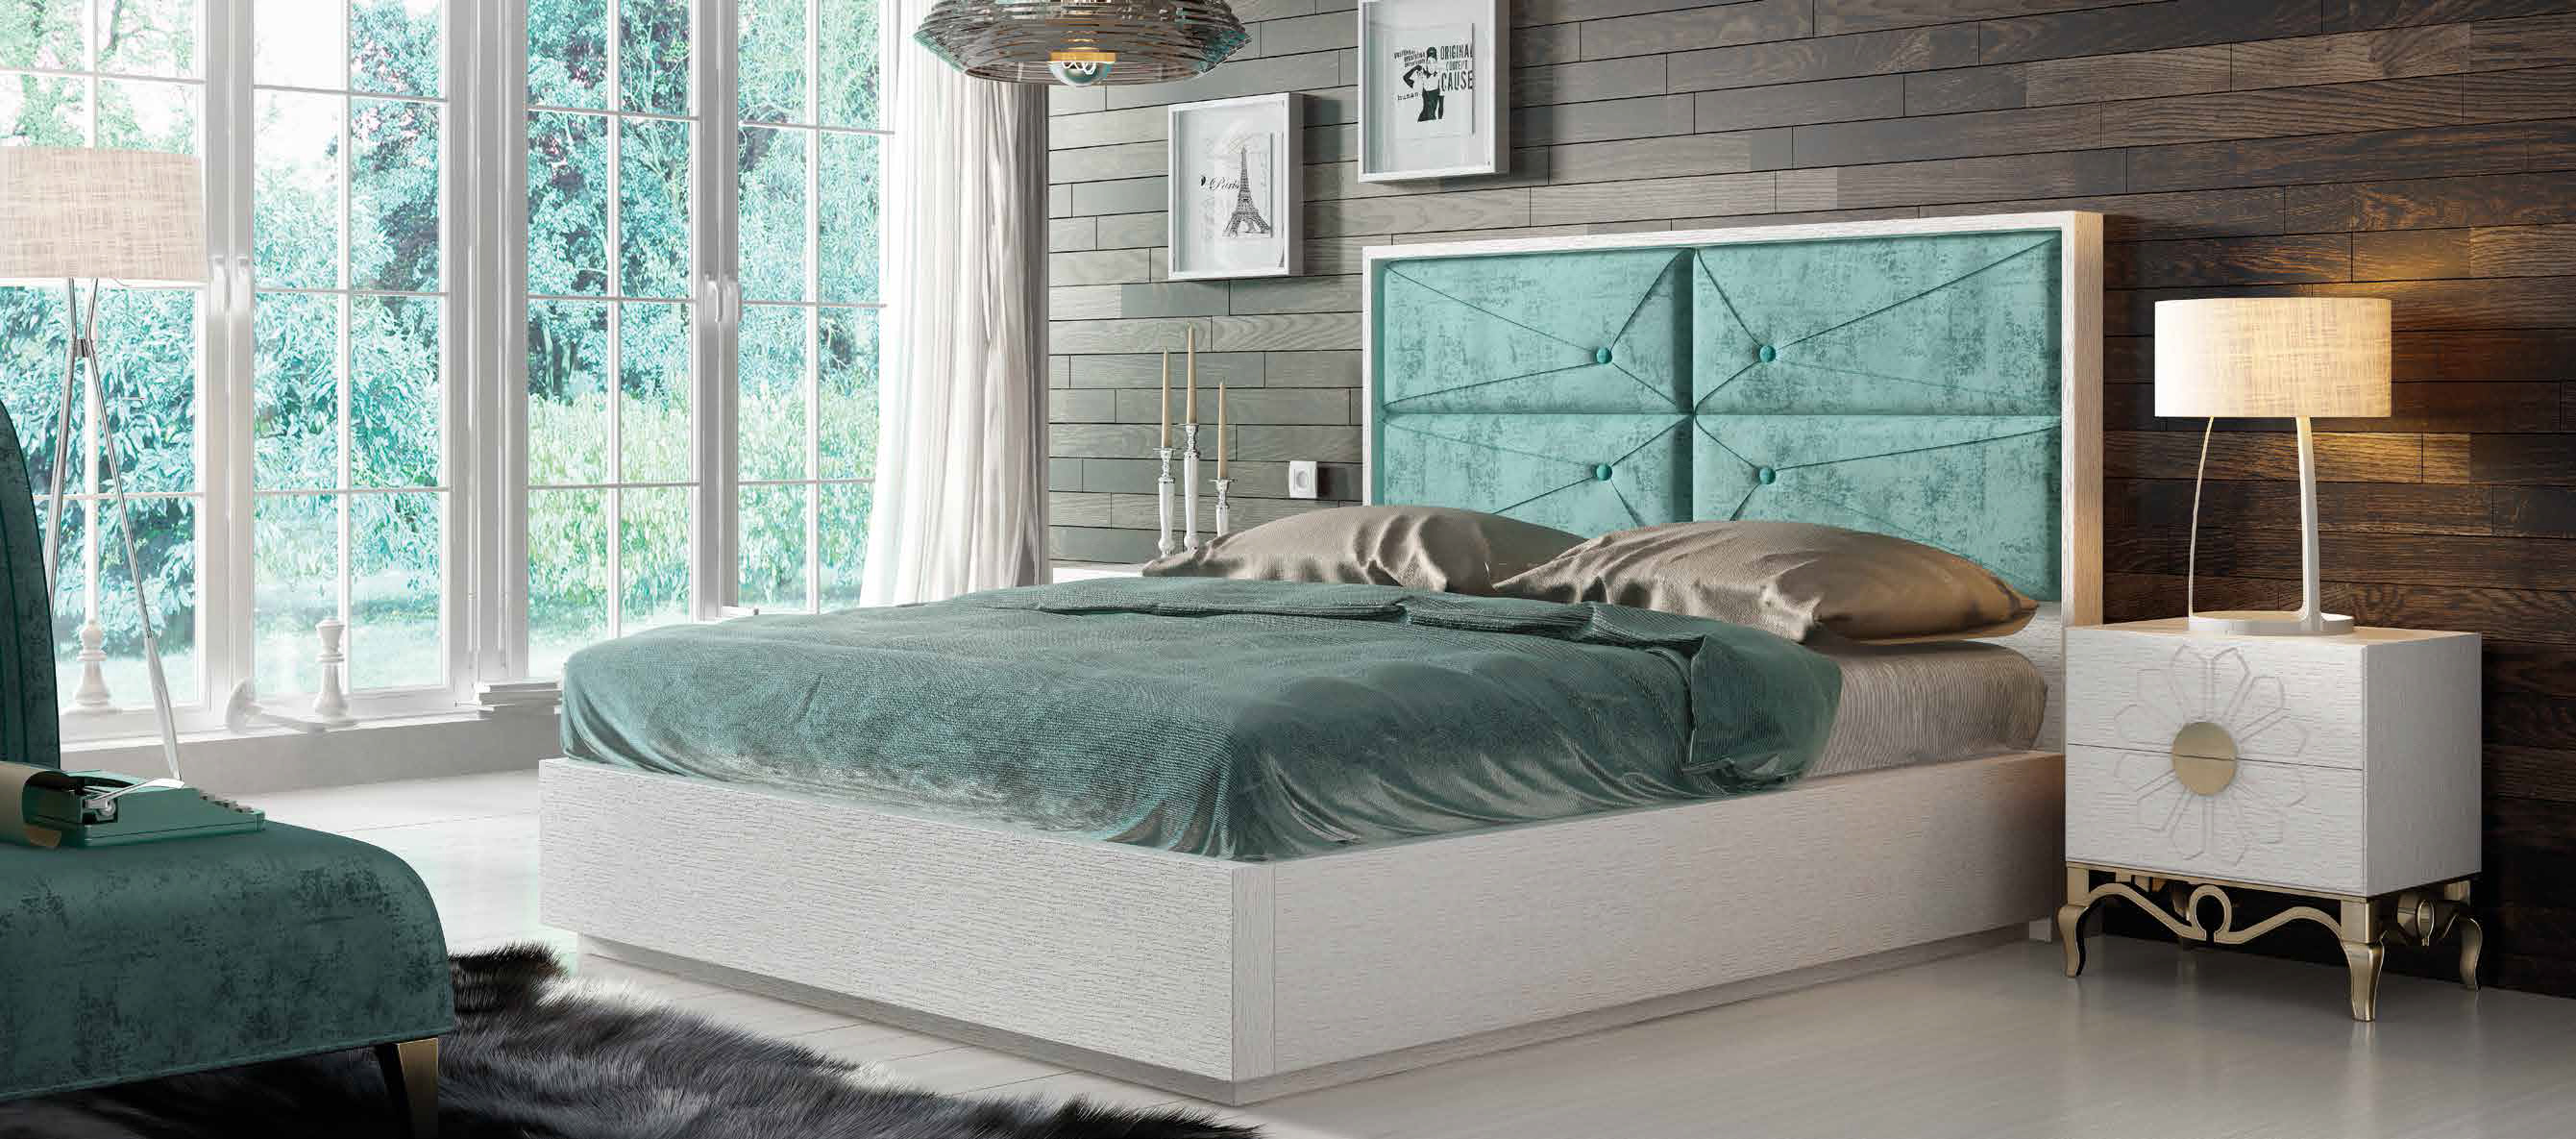 Brands Franco Furniture Avanty Bedrooms, Spain DOR 63